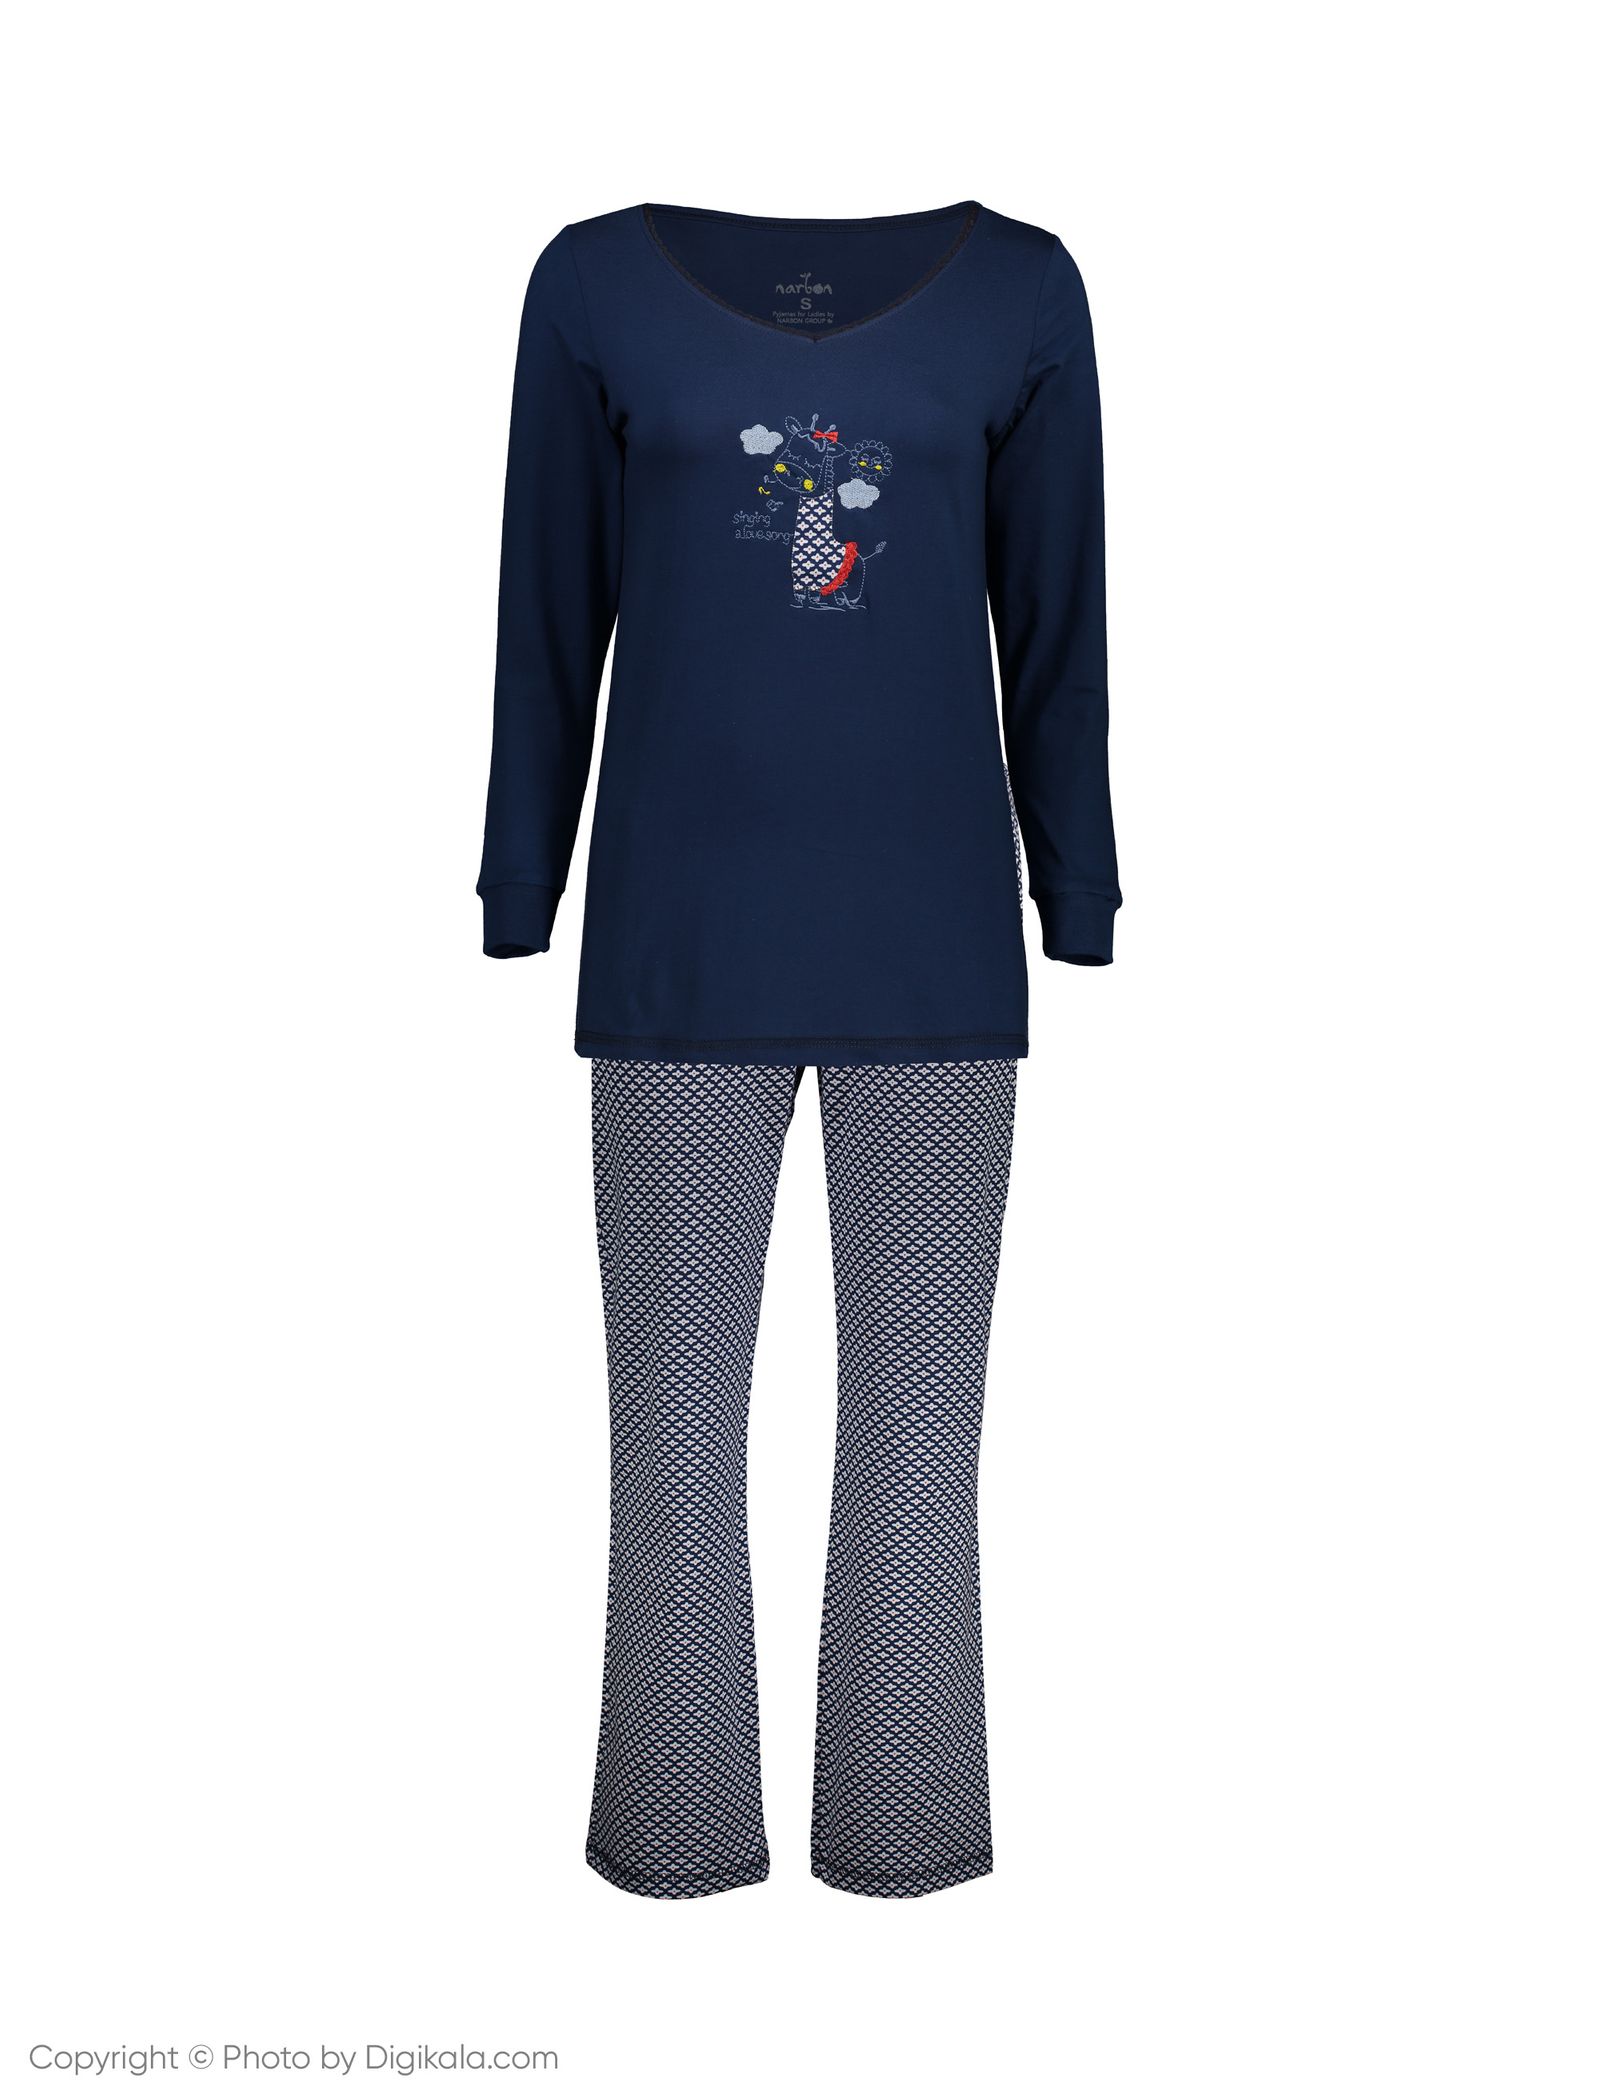 ست تی شرت و شلوار راحتی زنانه ناربن مدل1521168-60 - سورمه ای - 2